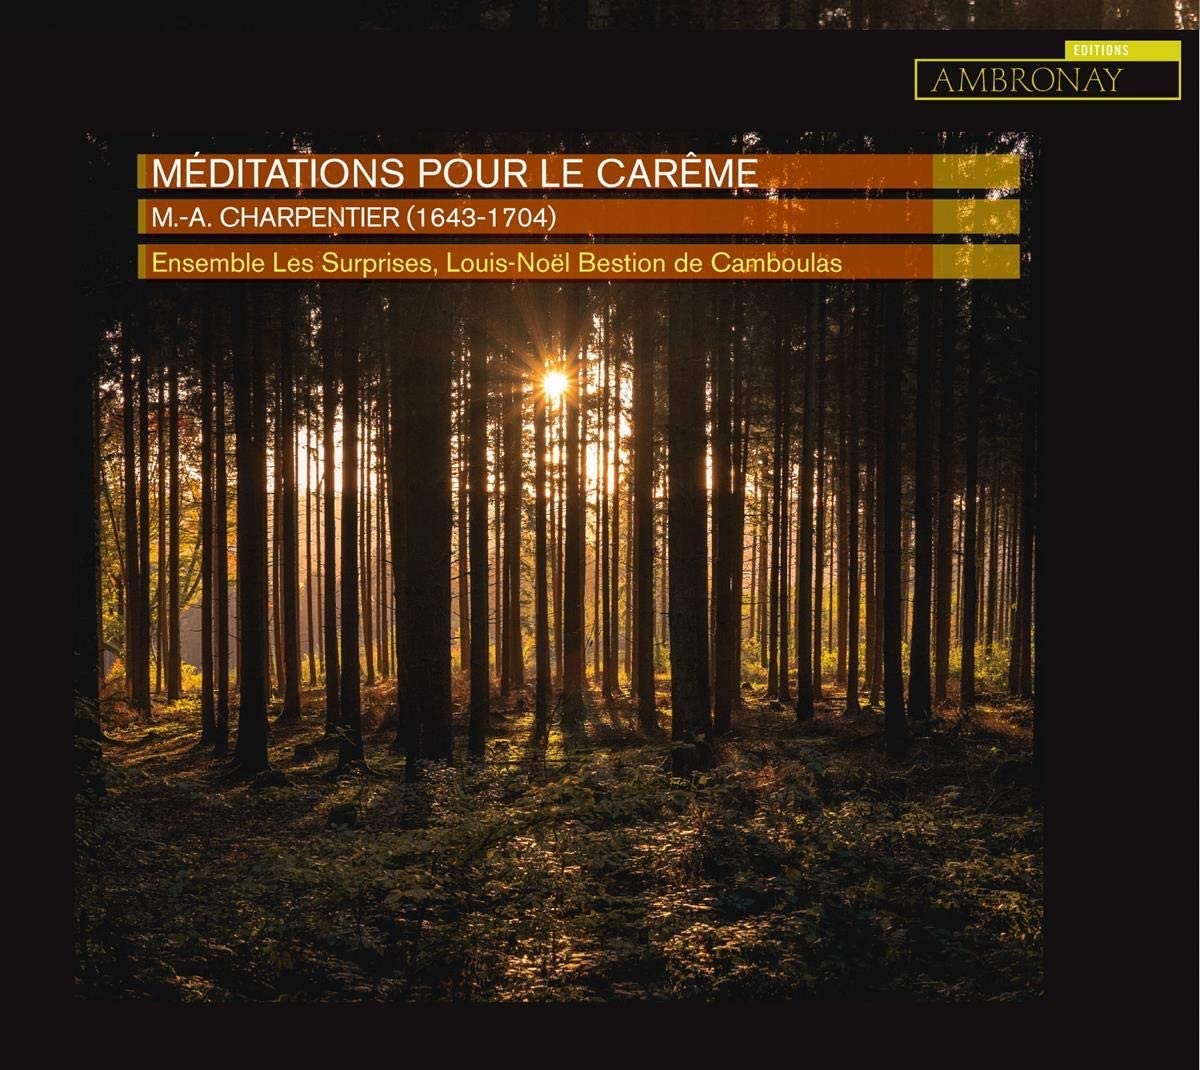 CD cover of Les Surprises Charpentier Pour le Carême